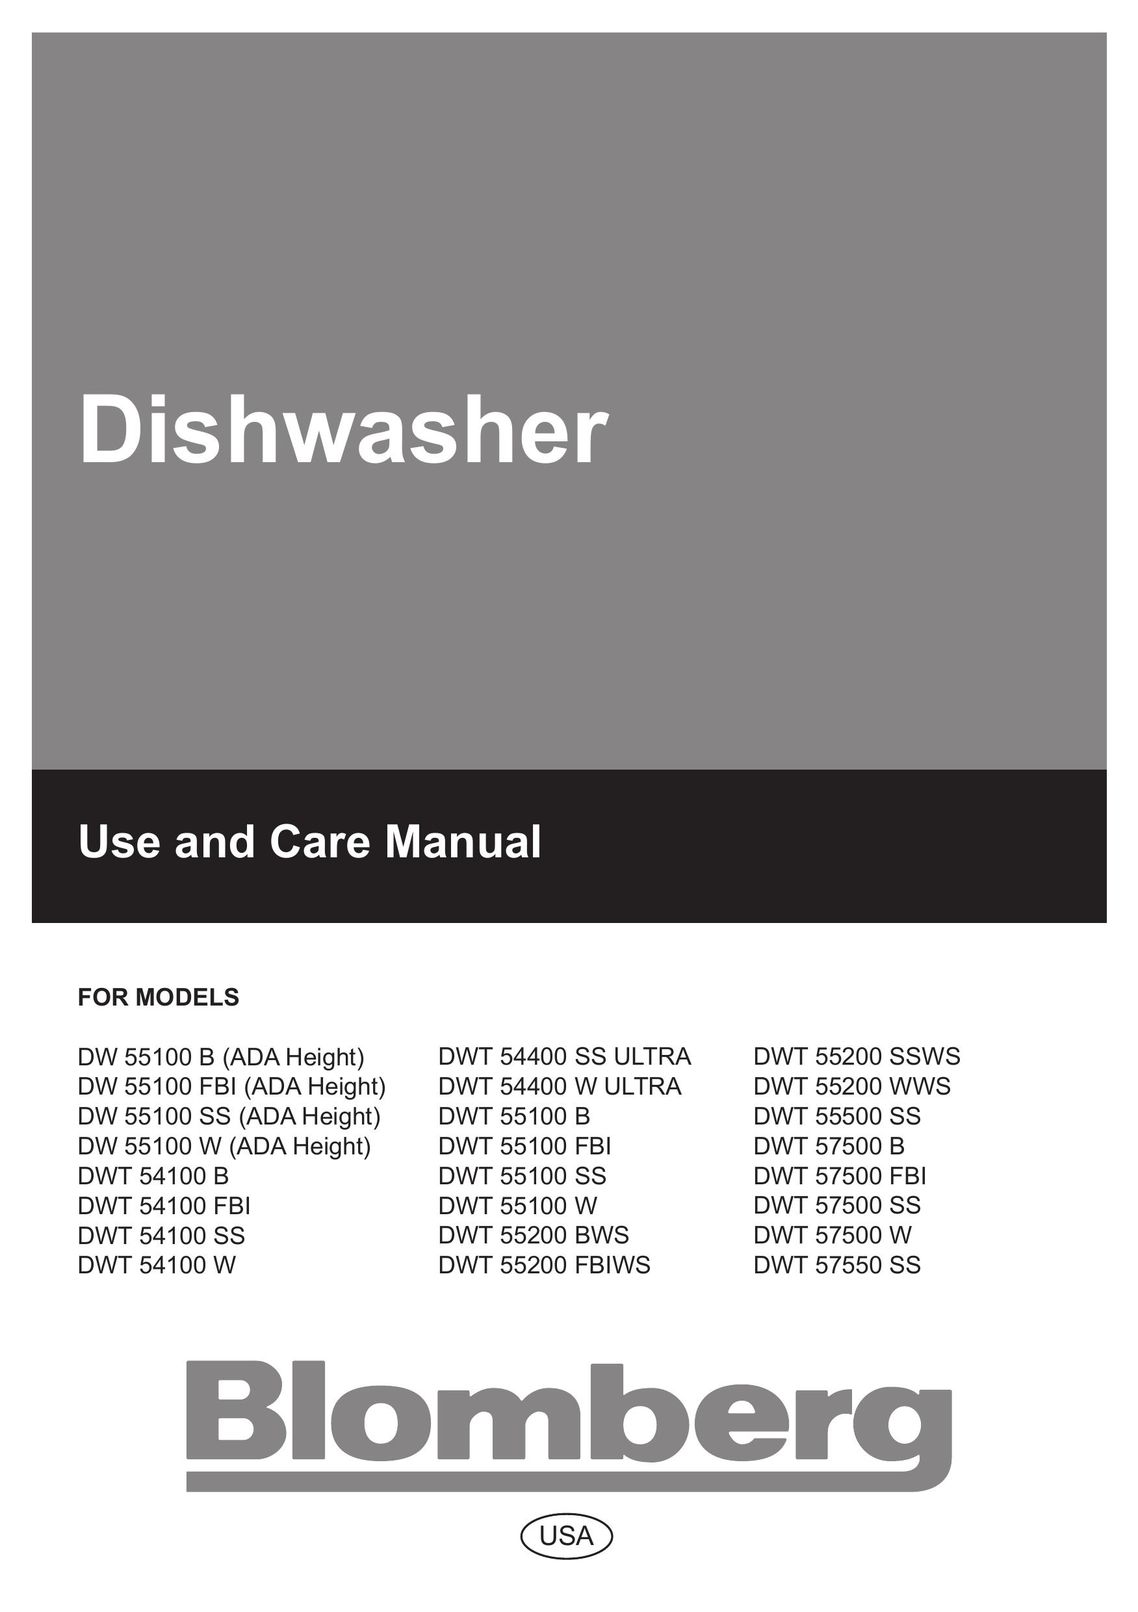 Blomberg DW 55200 SS Dishwasher User Manual